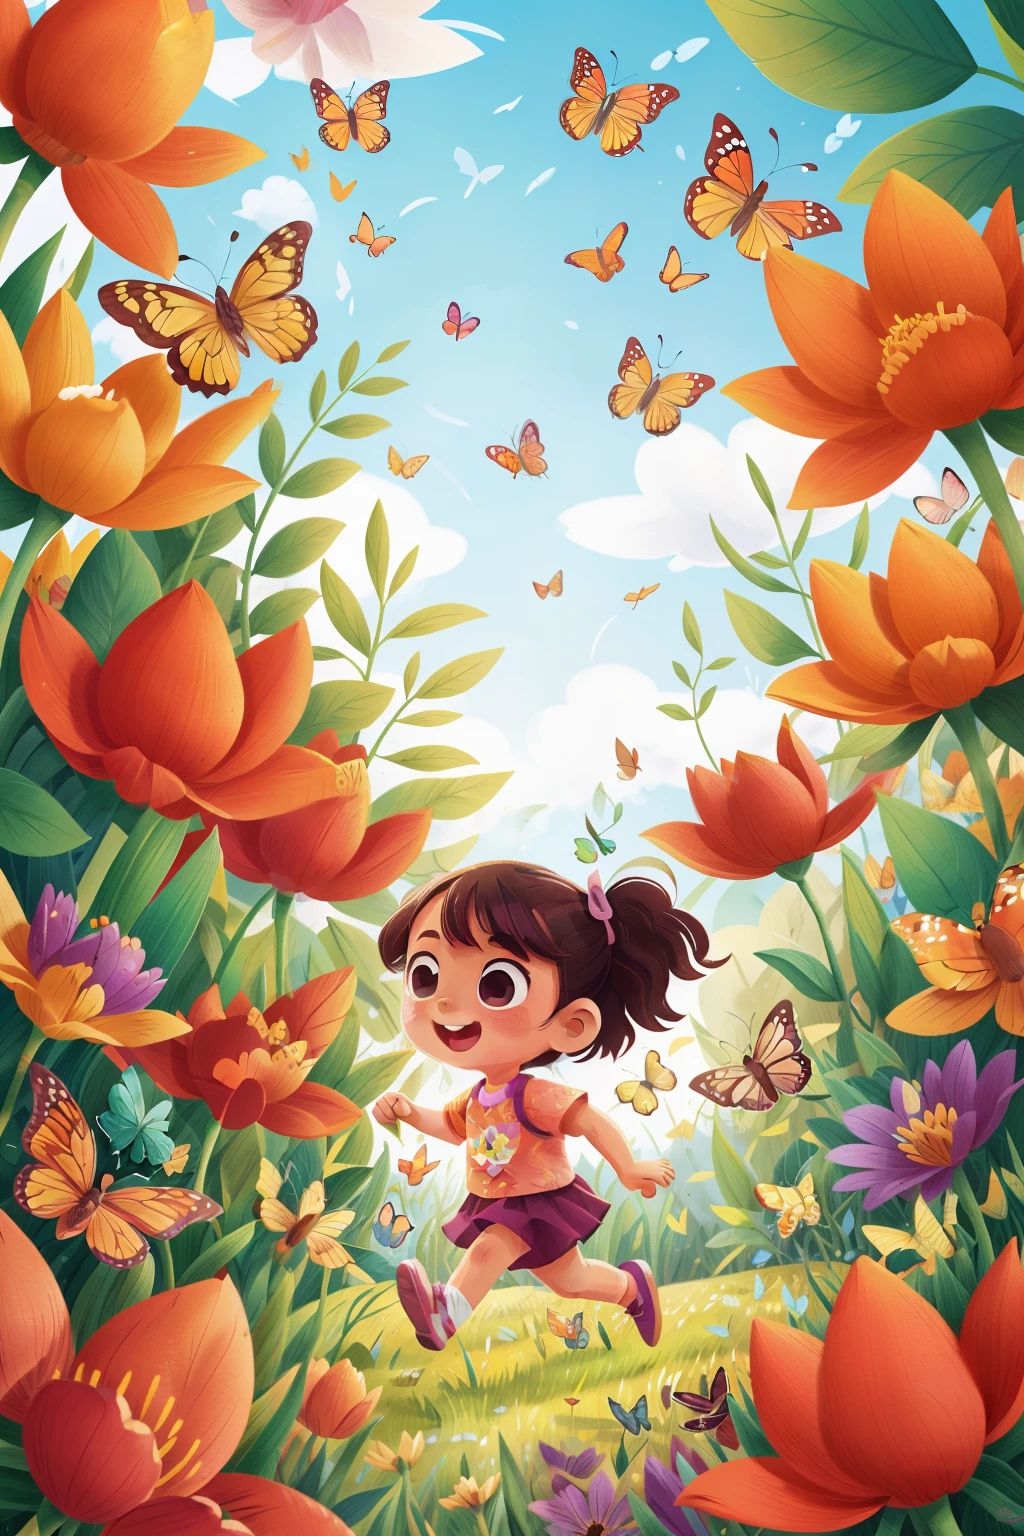 生成一個非常年輕的女孩在花田裡快樂奔跑的圖像, 周圍環繞著各種顏色的蝴蝶